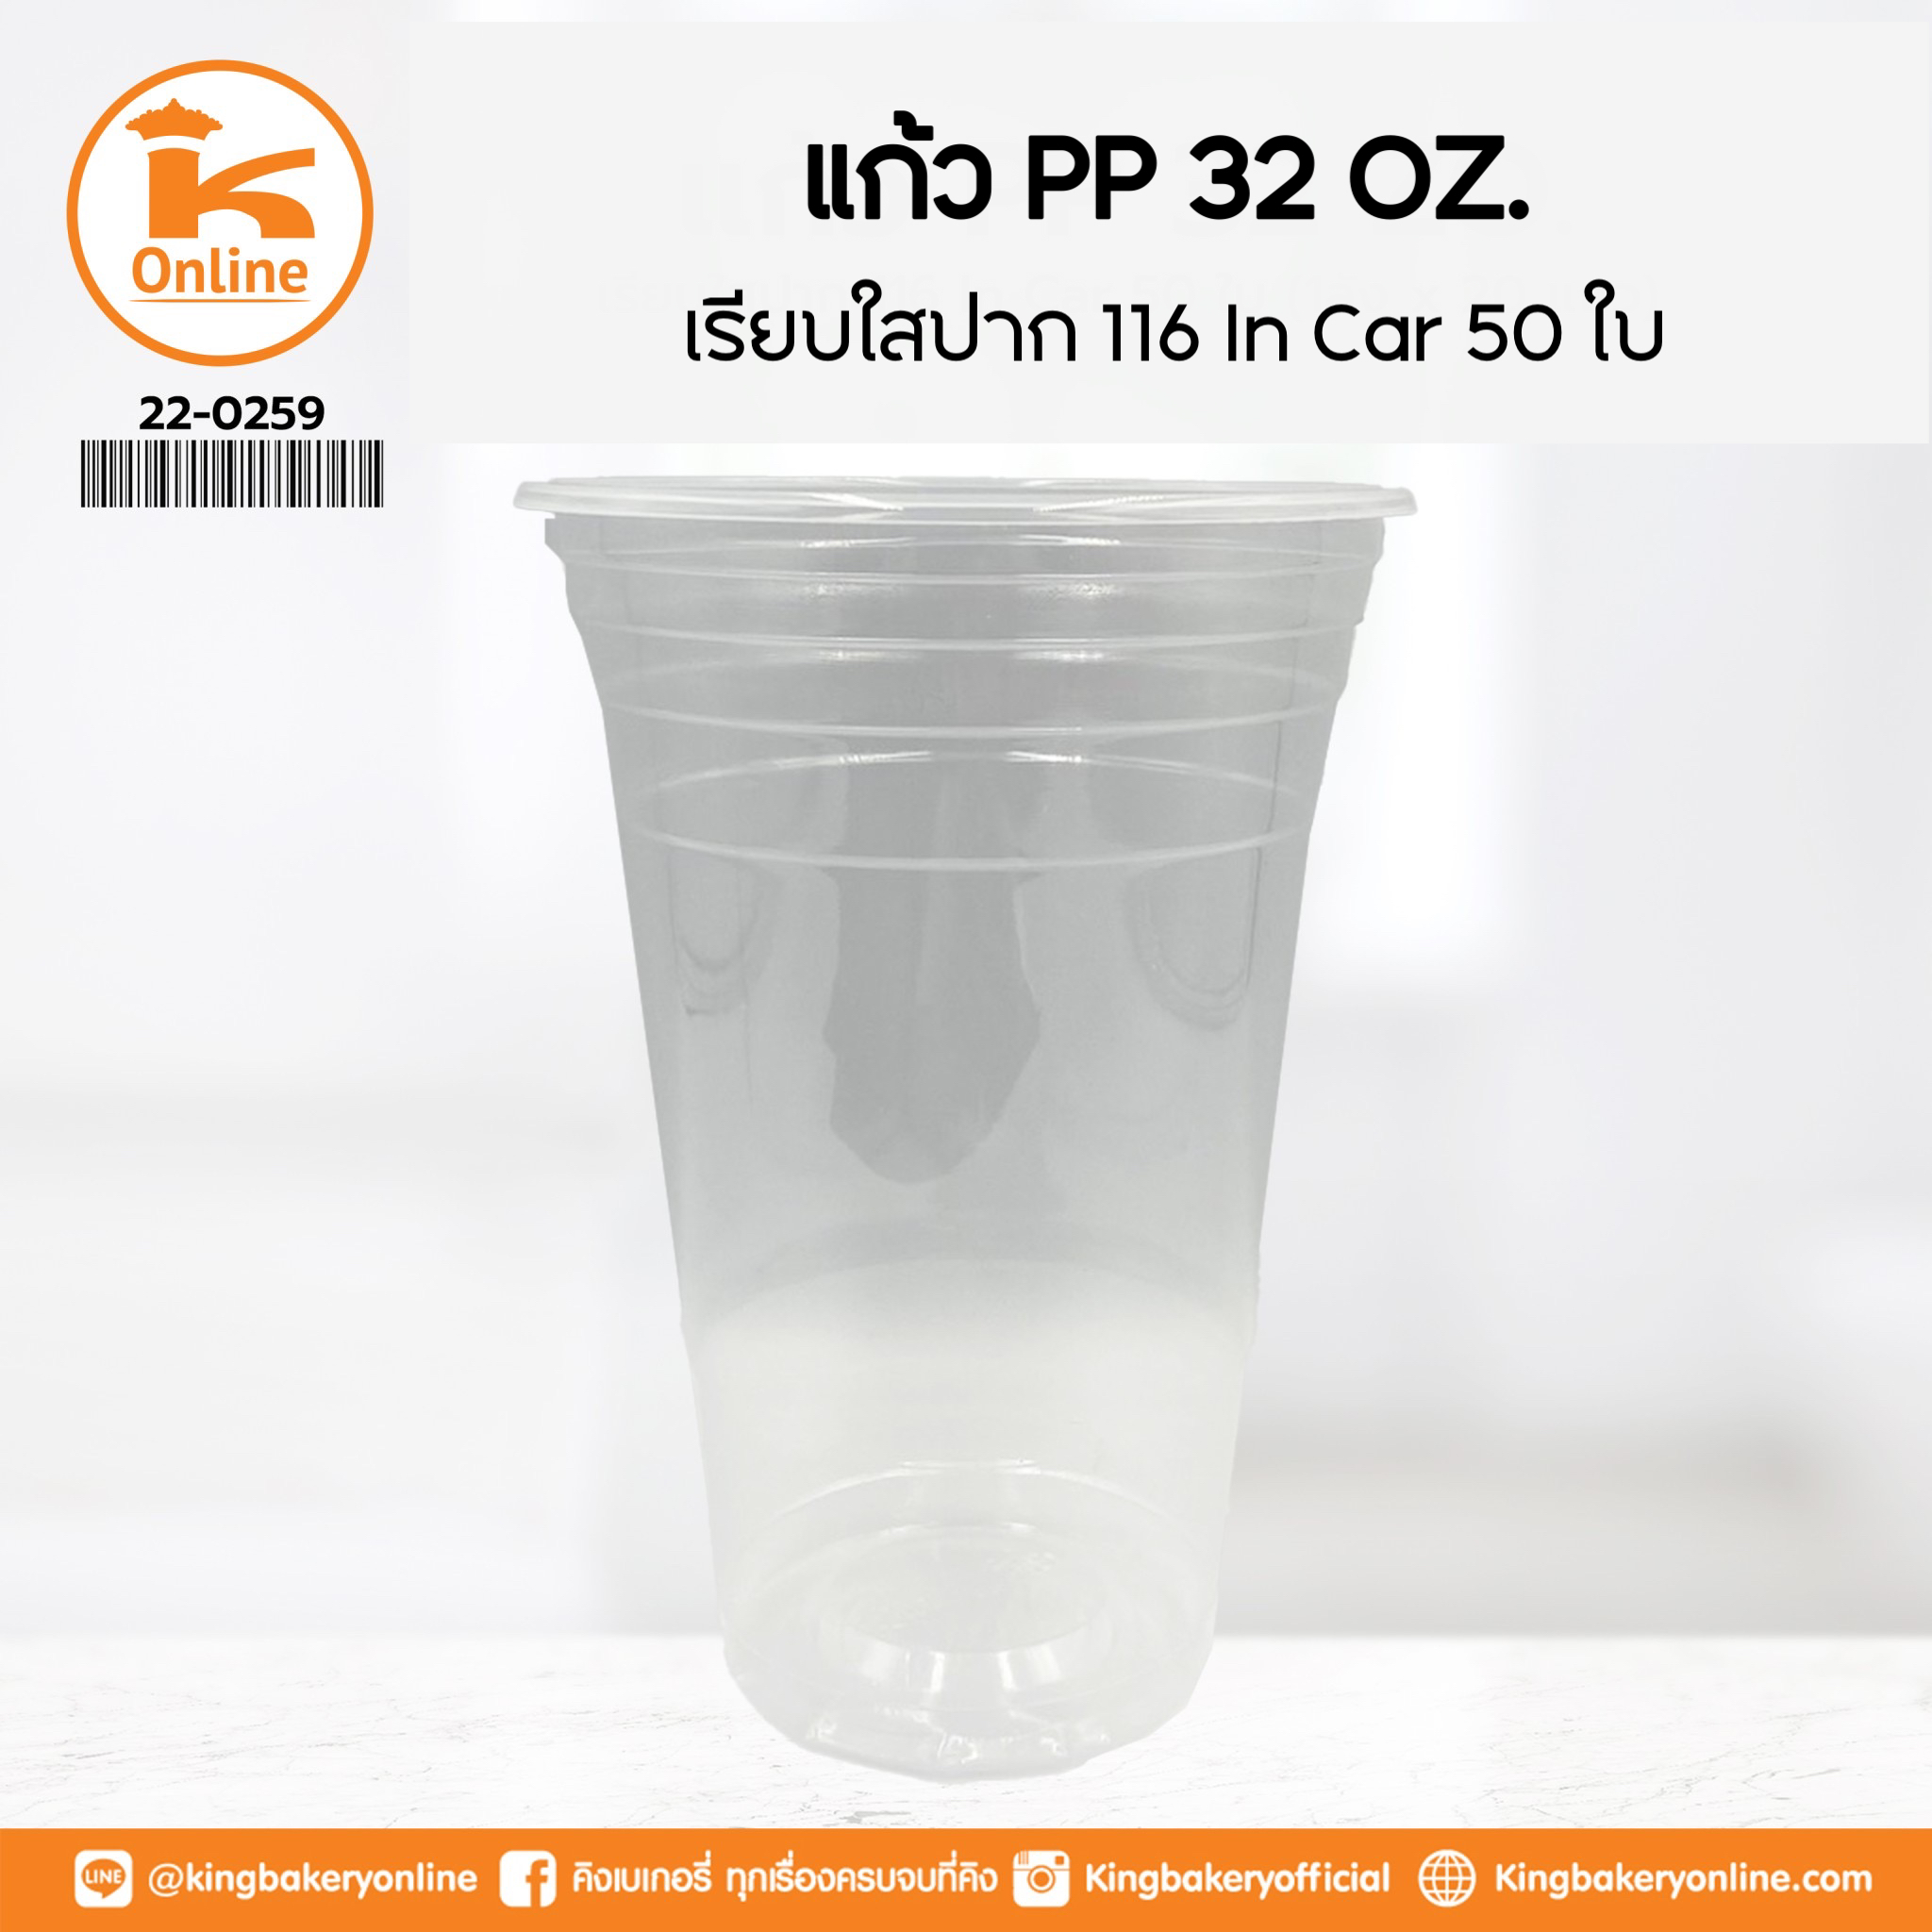 แก้ว PP 32 oz. เรียบใสปาก 116 In Car 50 ใบ (1ลังx20แถว)